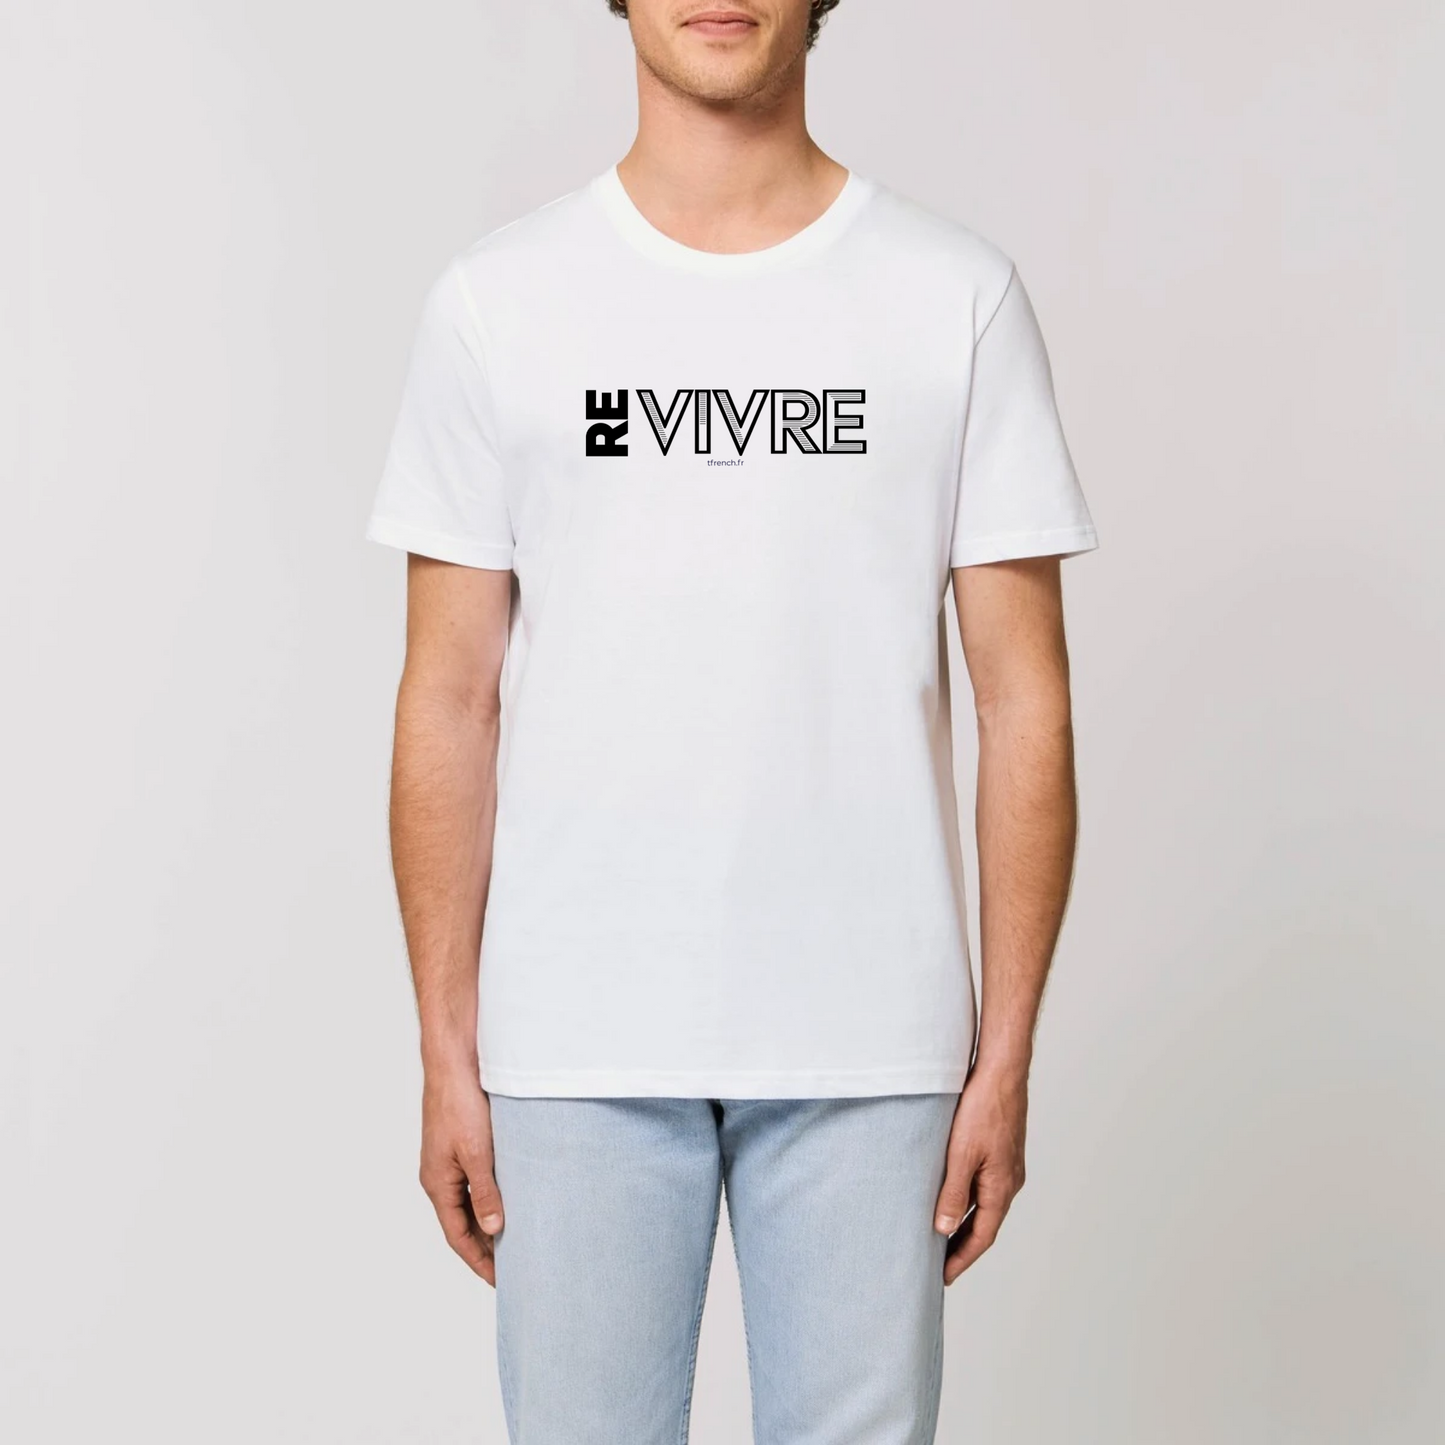 t-shirt Re Vivre en coton bio pour homme de T-French, t-shirt vivre, t-shirt liberté, tee shirt homme bio Re Vivre, t-shirt Blanc